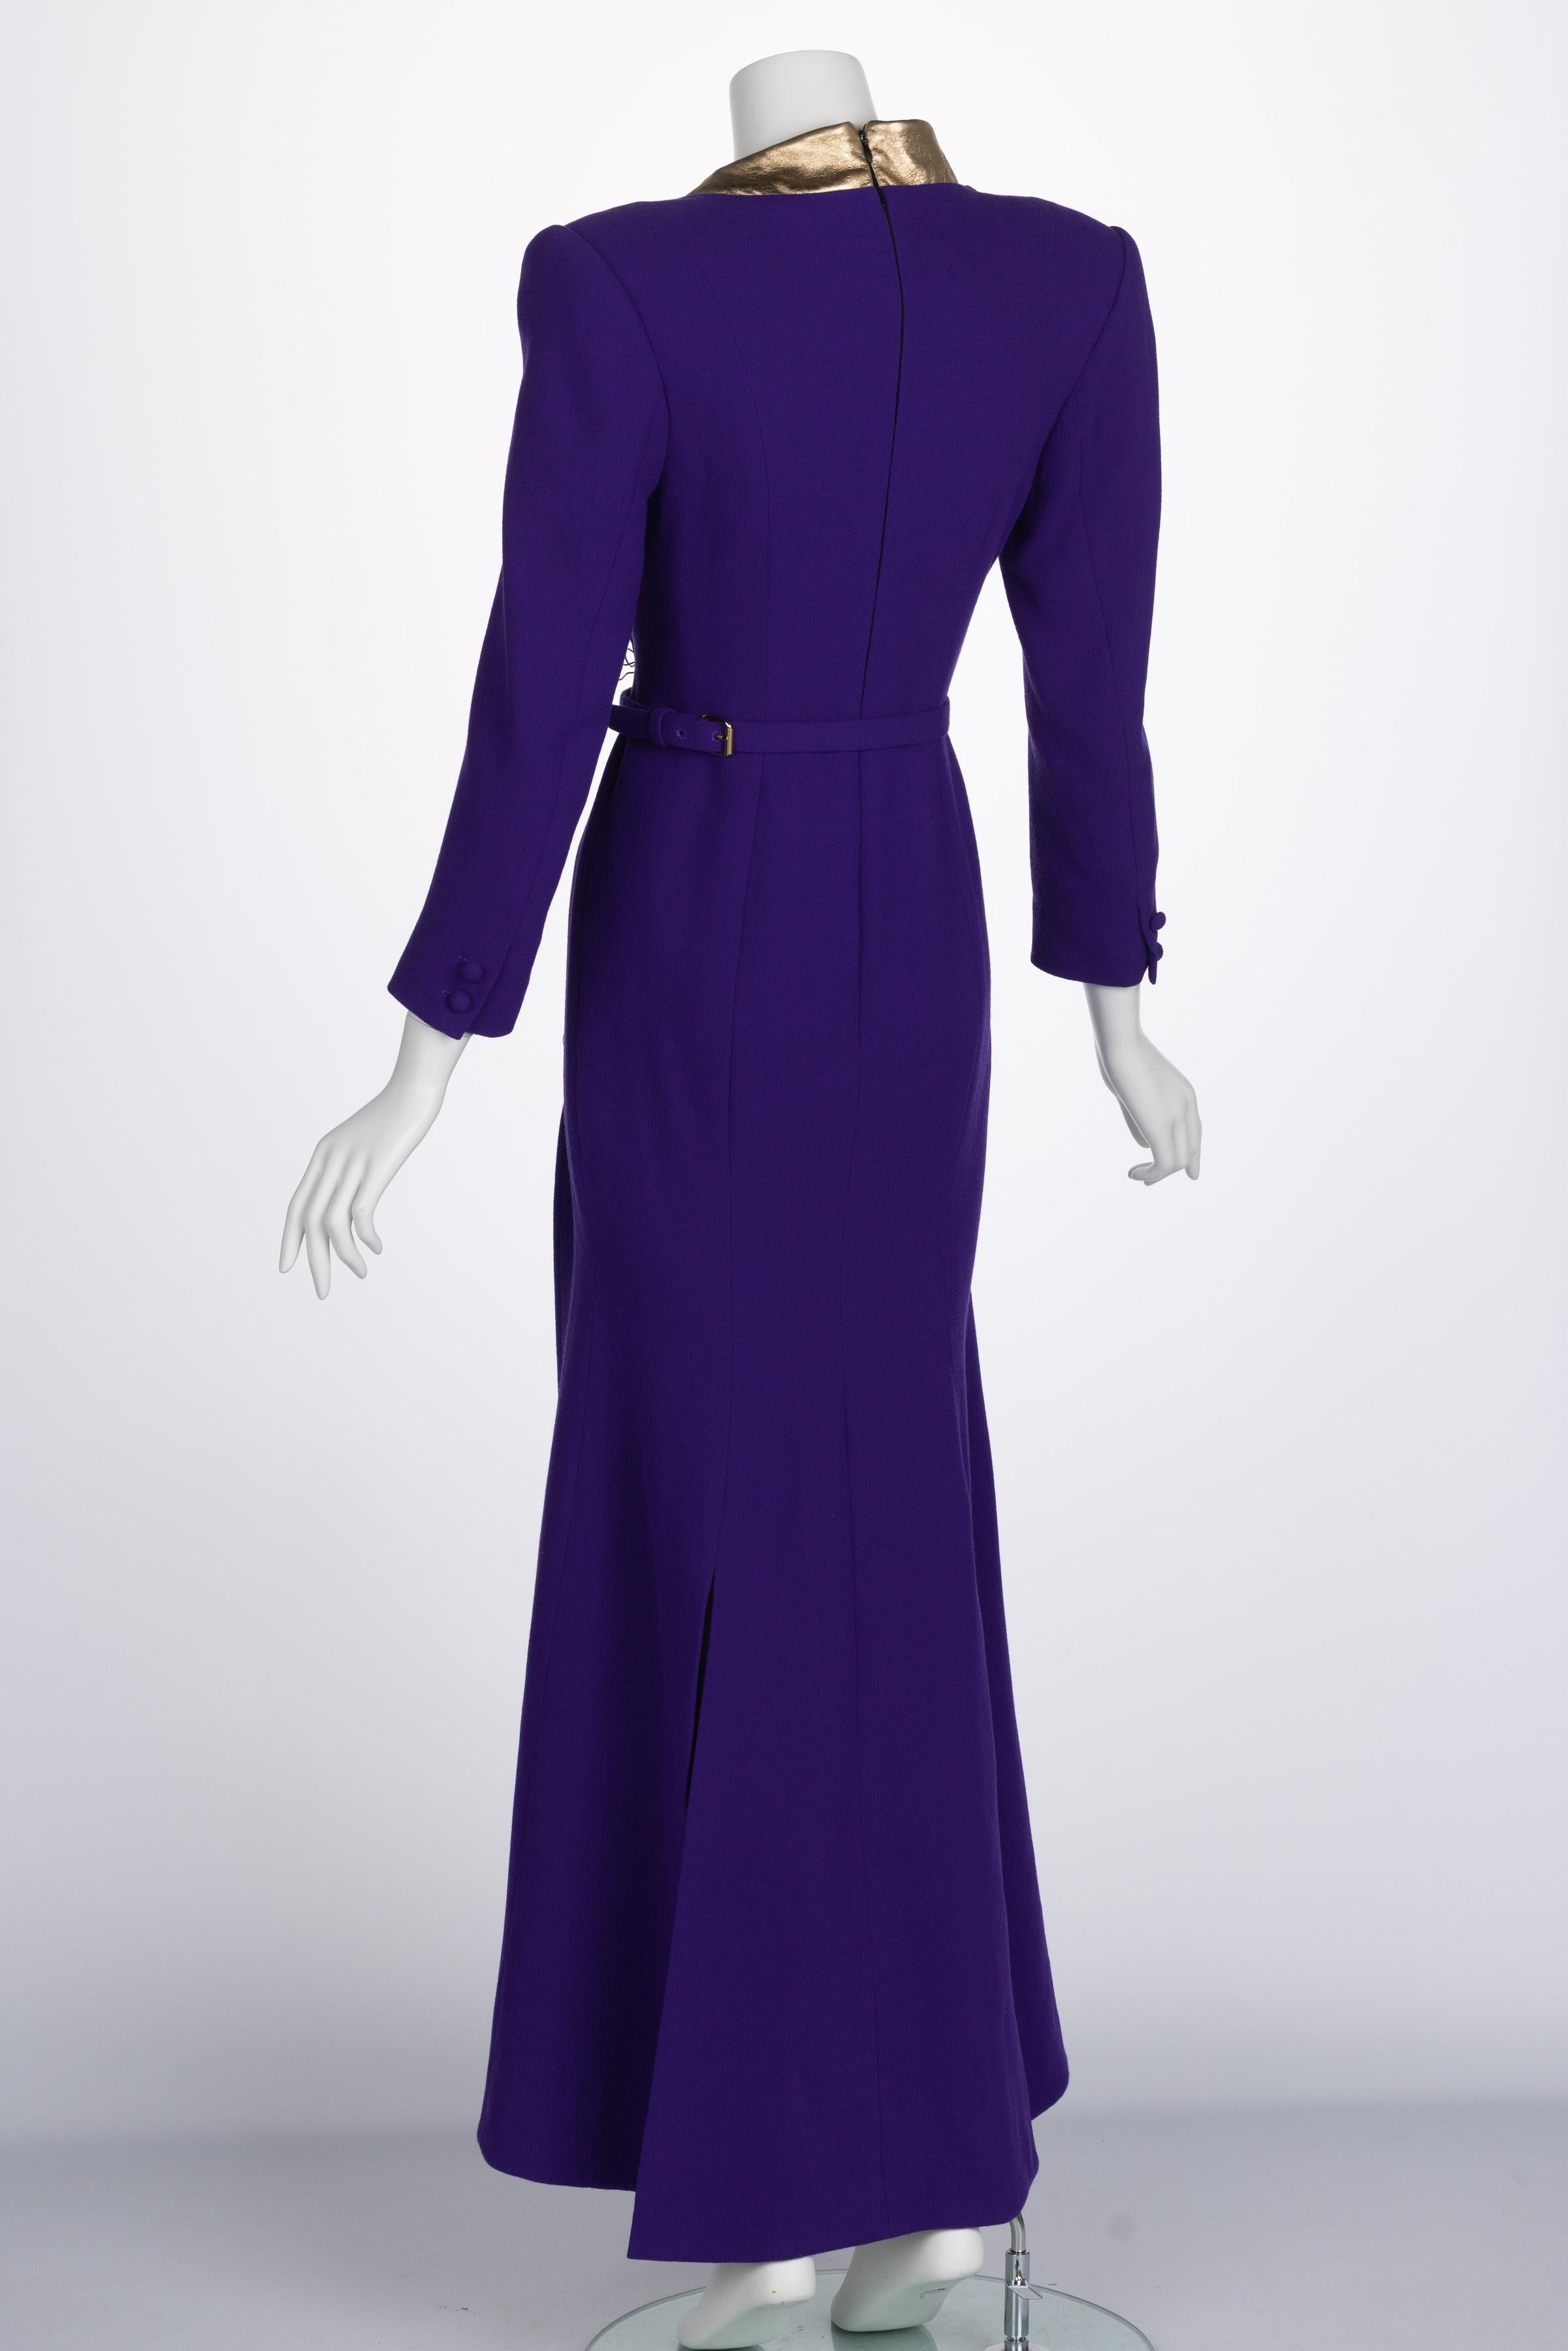 Ronald Van der kemp Haute Couture Dress, 2018 For Sale 1